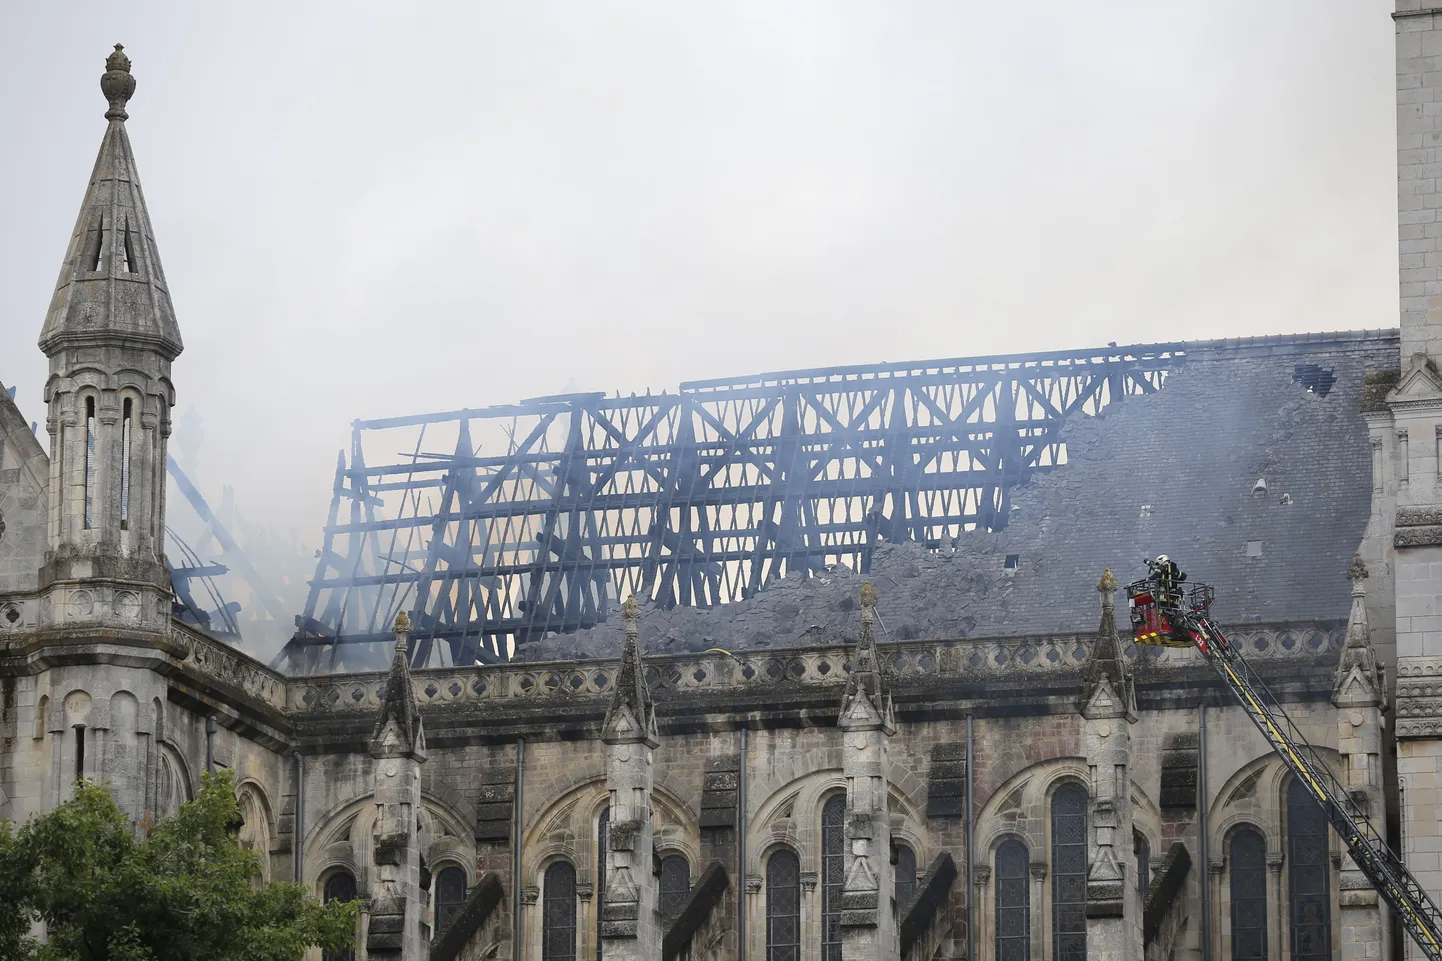 Tuletõrjujad täna Nantes'i kadedraali kustutamas.